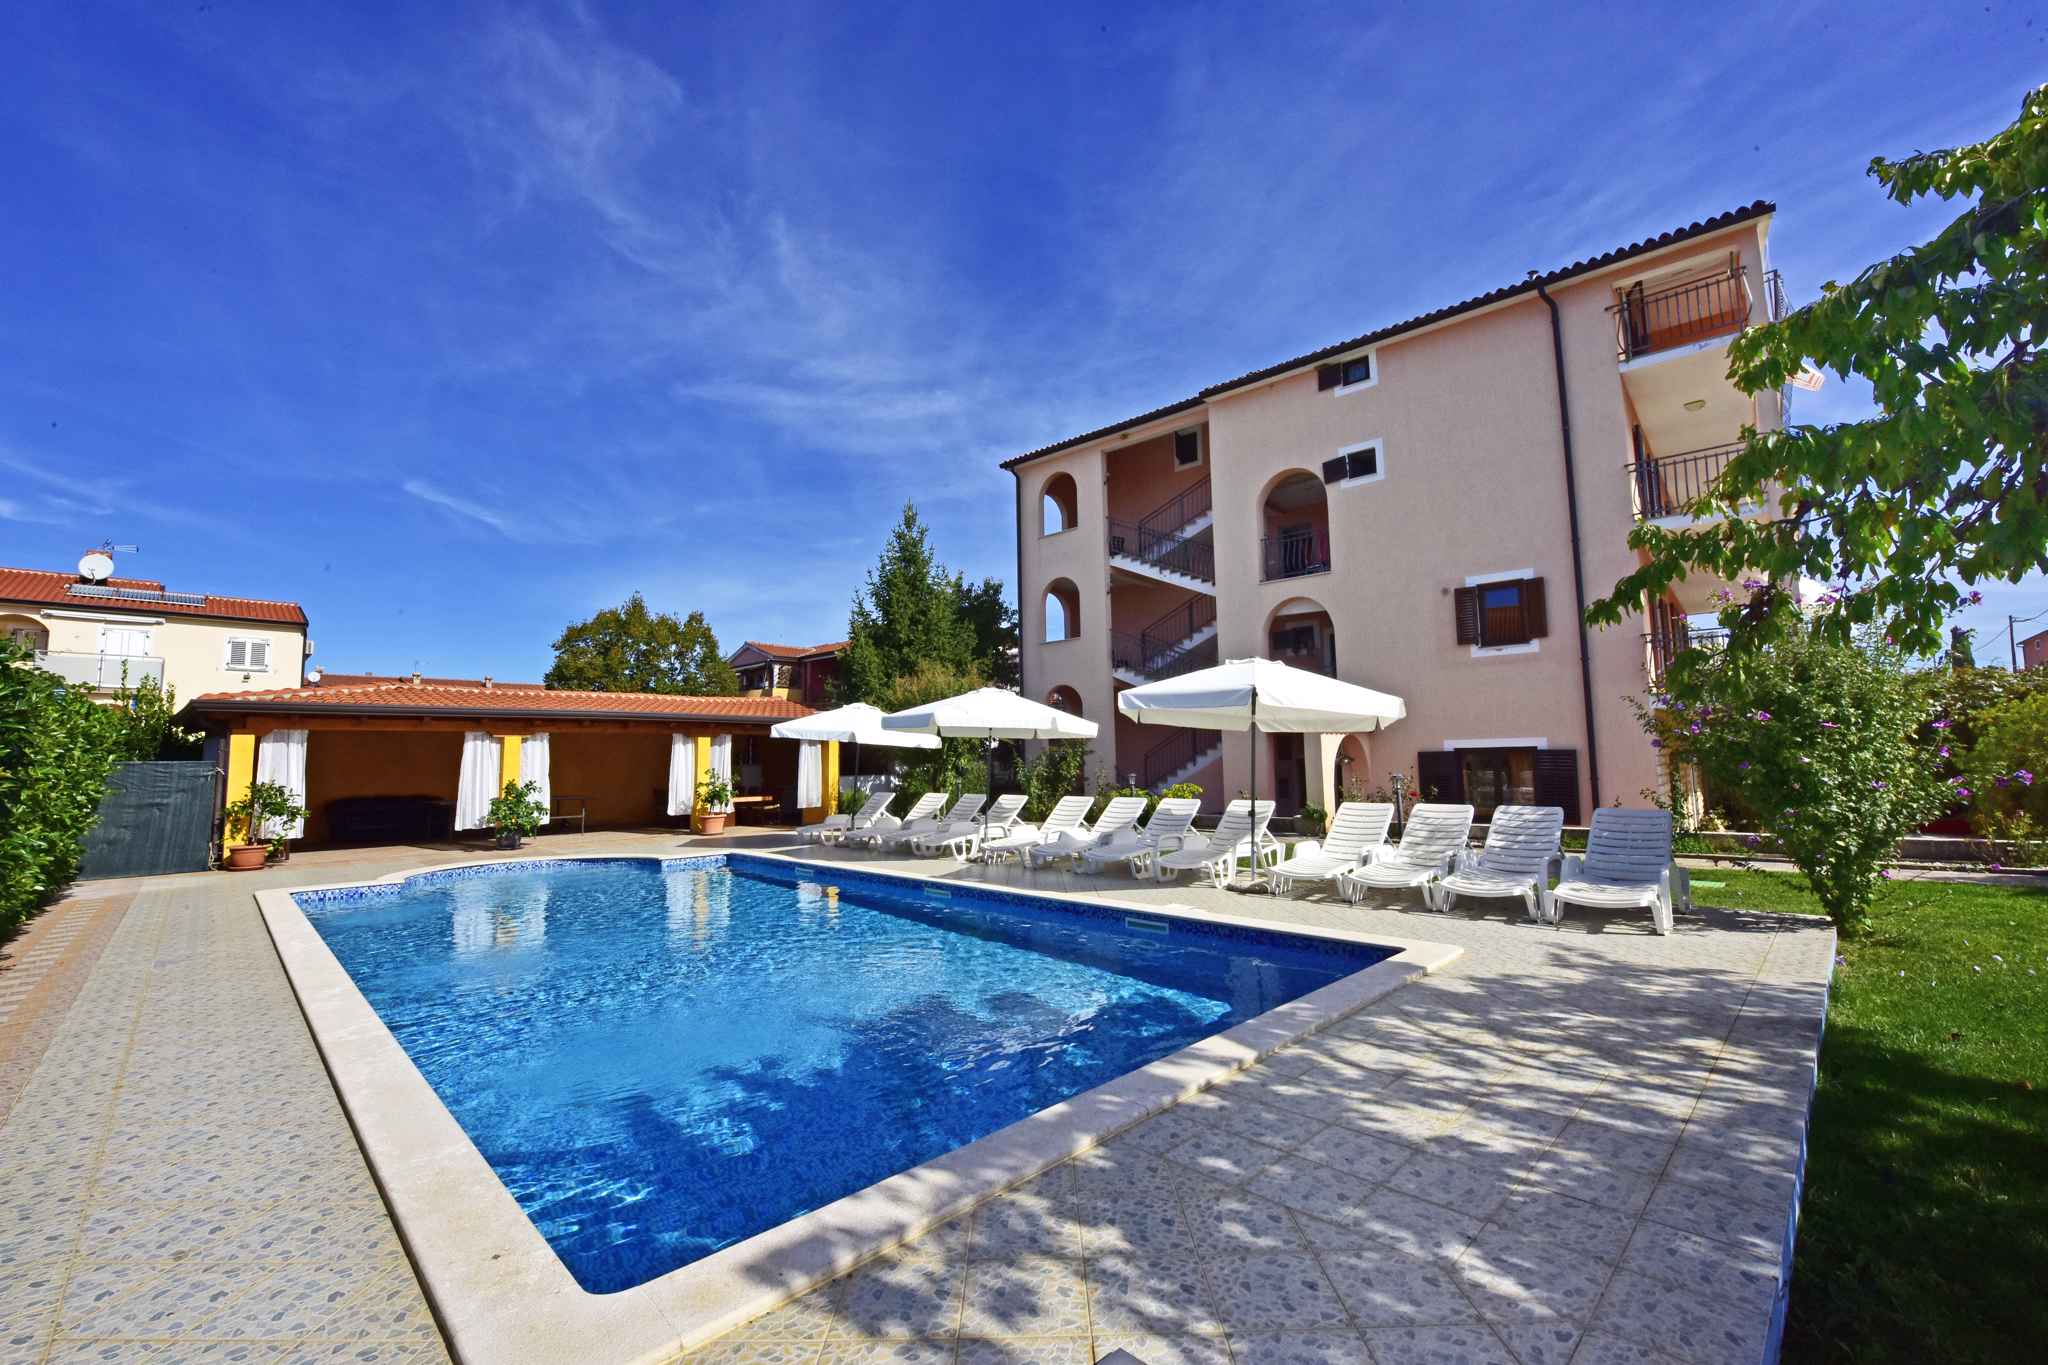 Ferienwohnung mit Pool und Balkon  in Kroatien